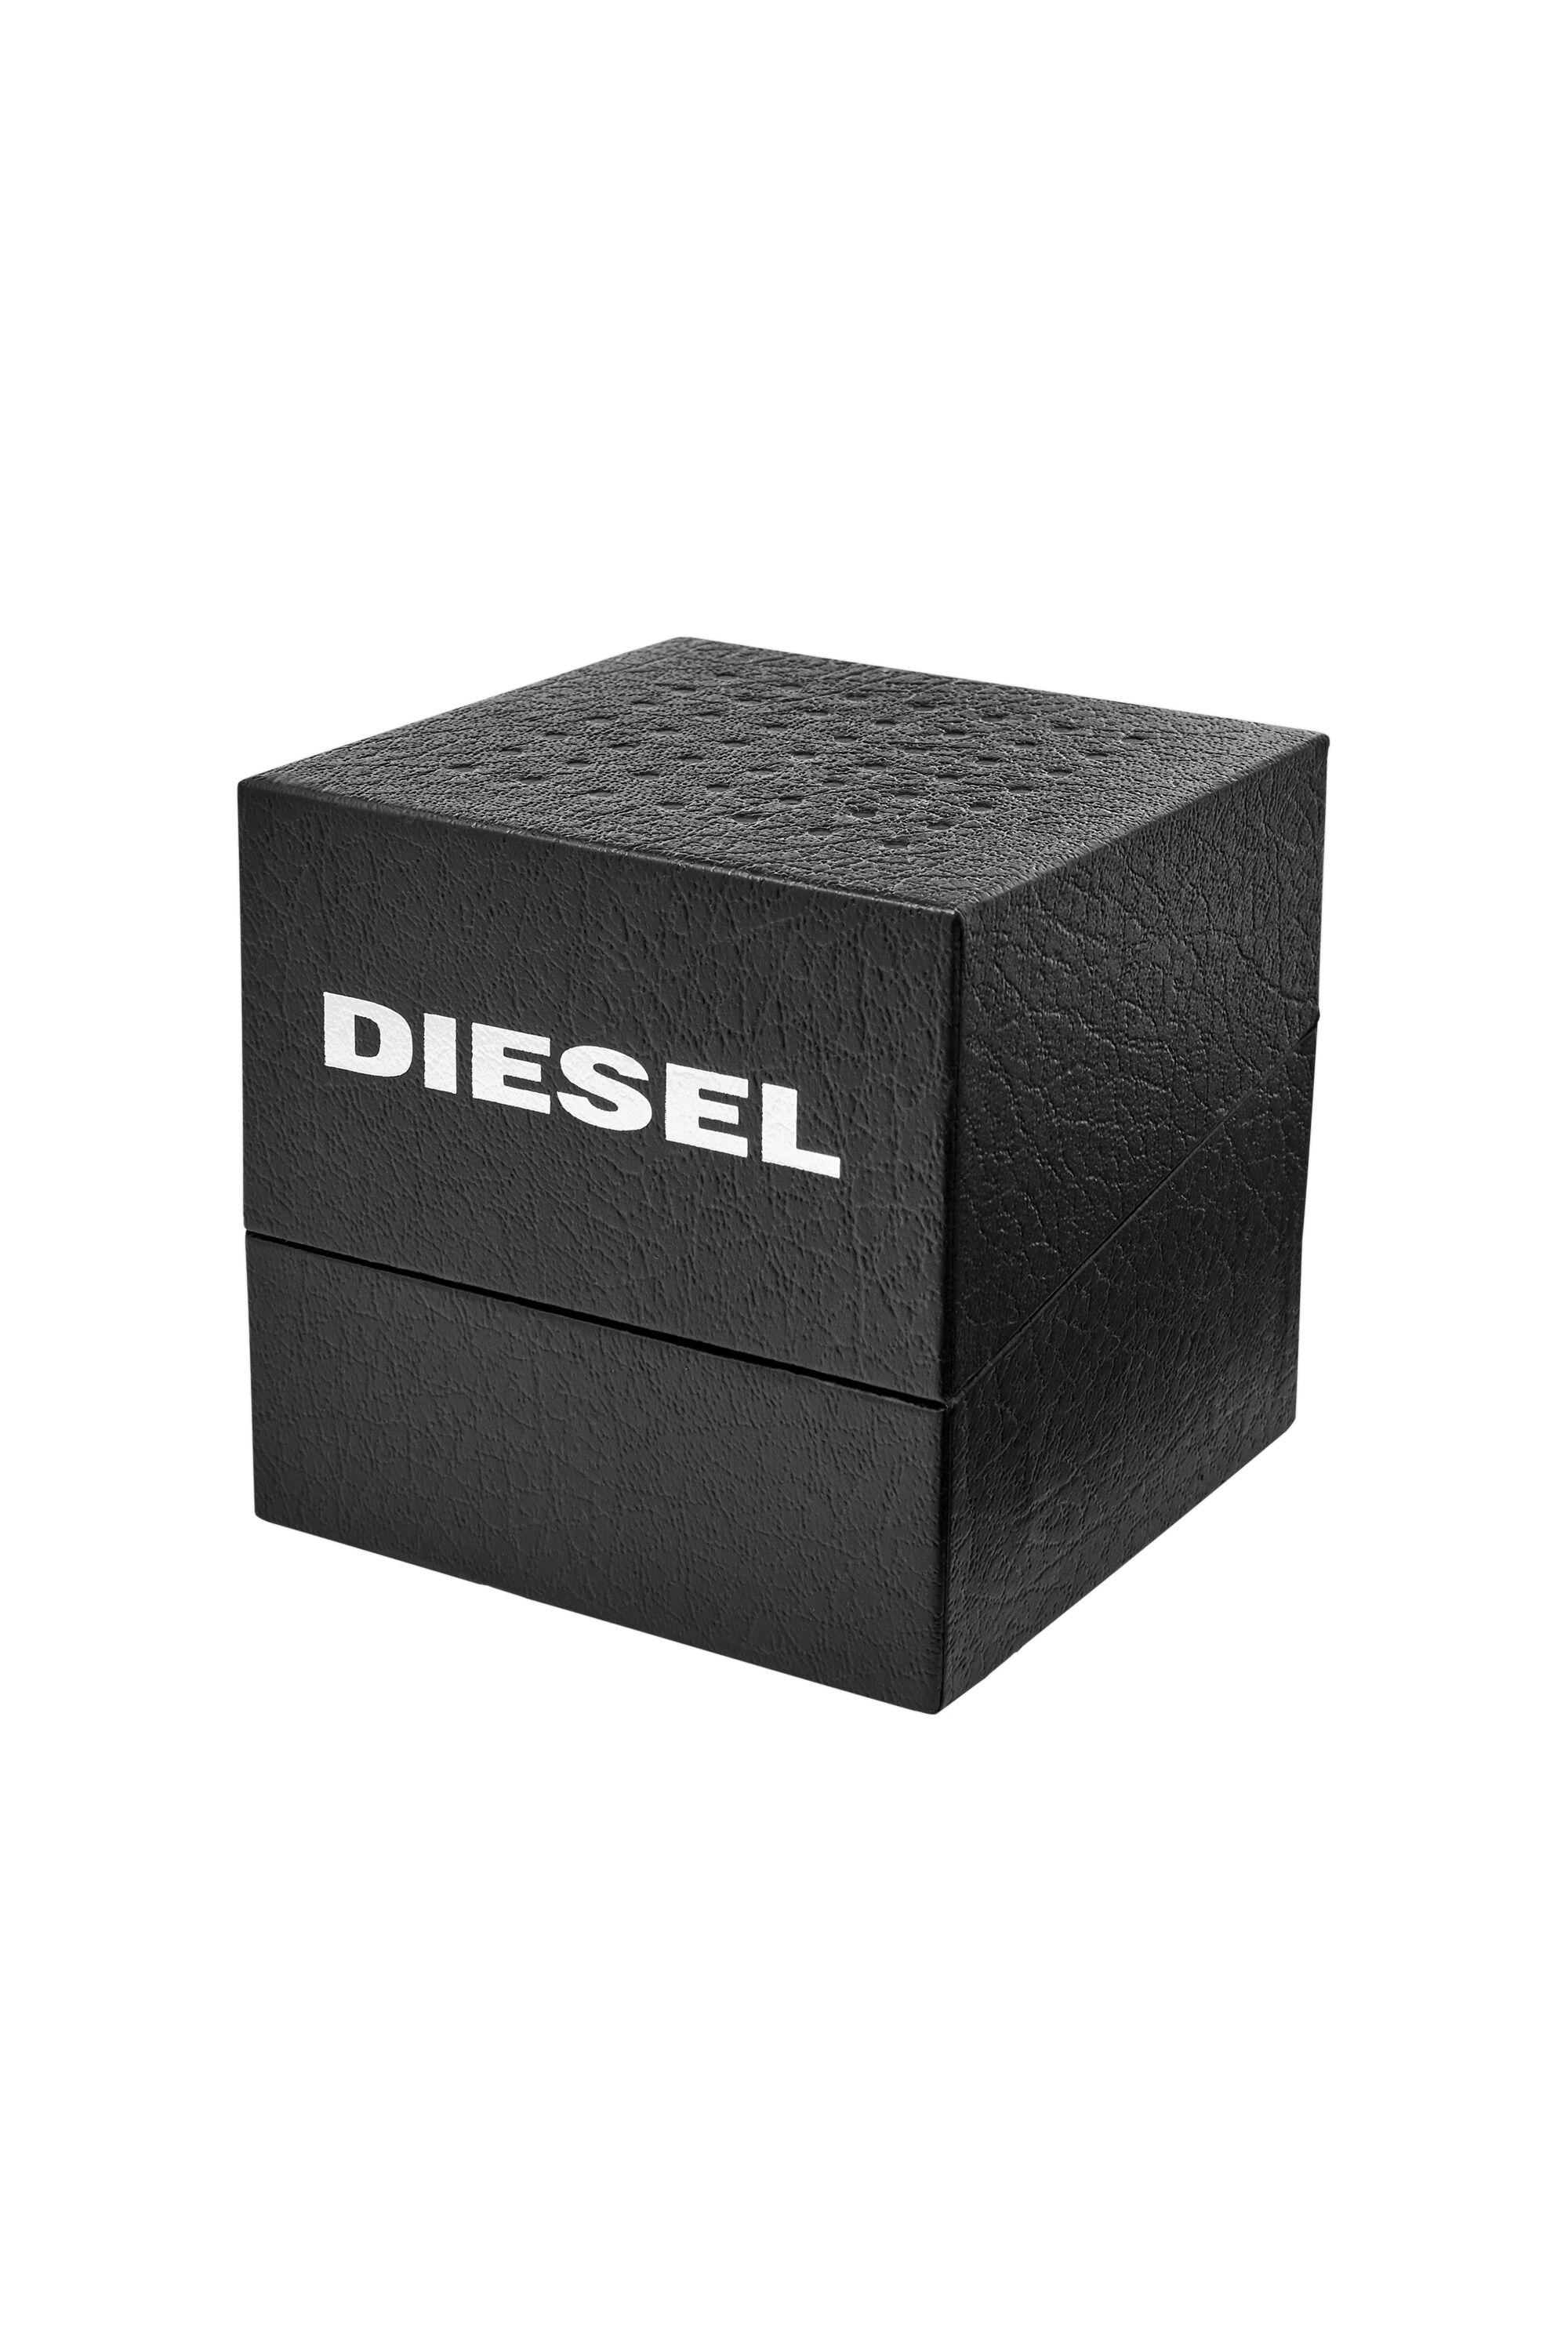 Diesel - DZ1906, Schwarz - Image 6